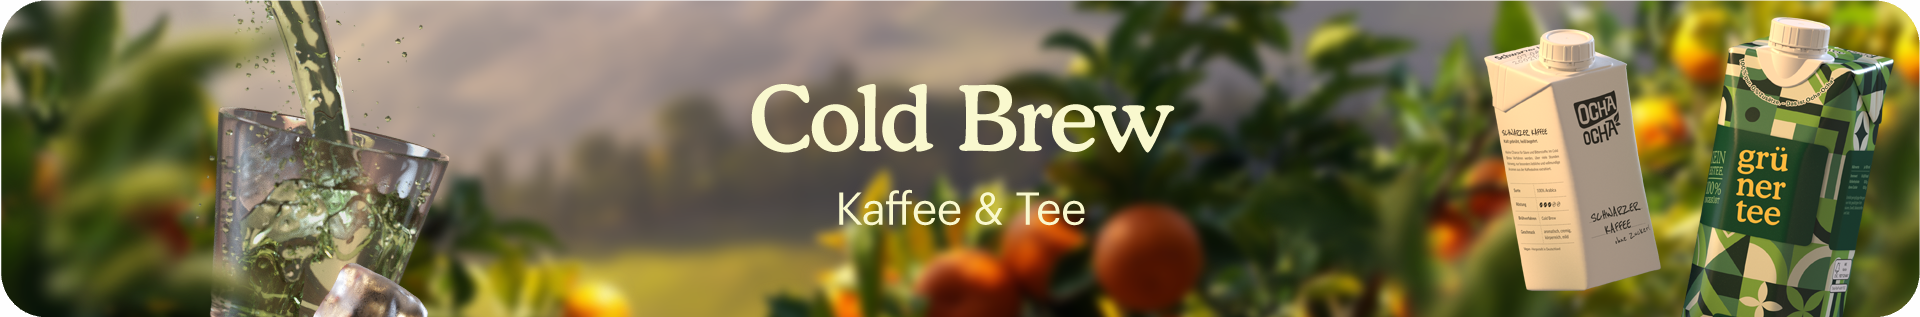 Banner von Ocha-Ocha zum Cold Brew